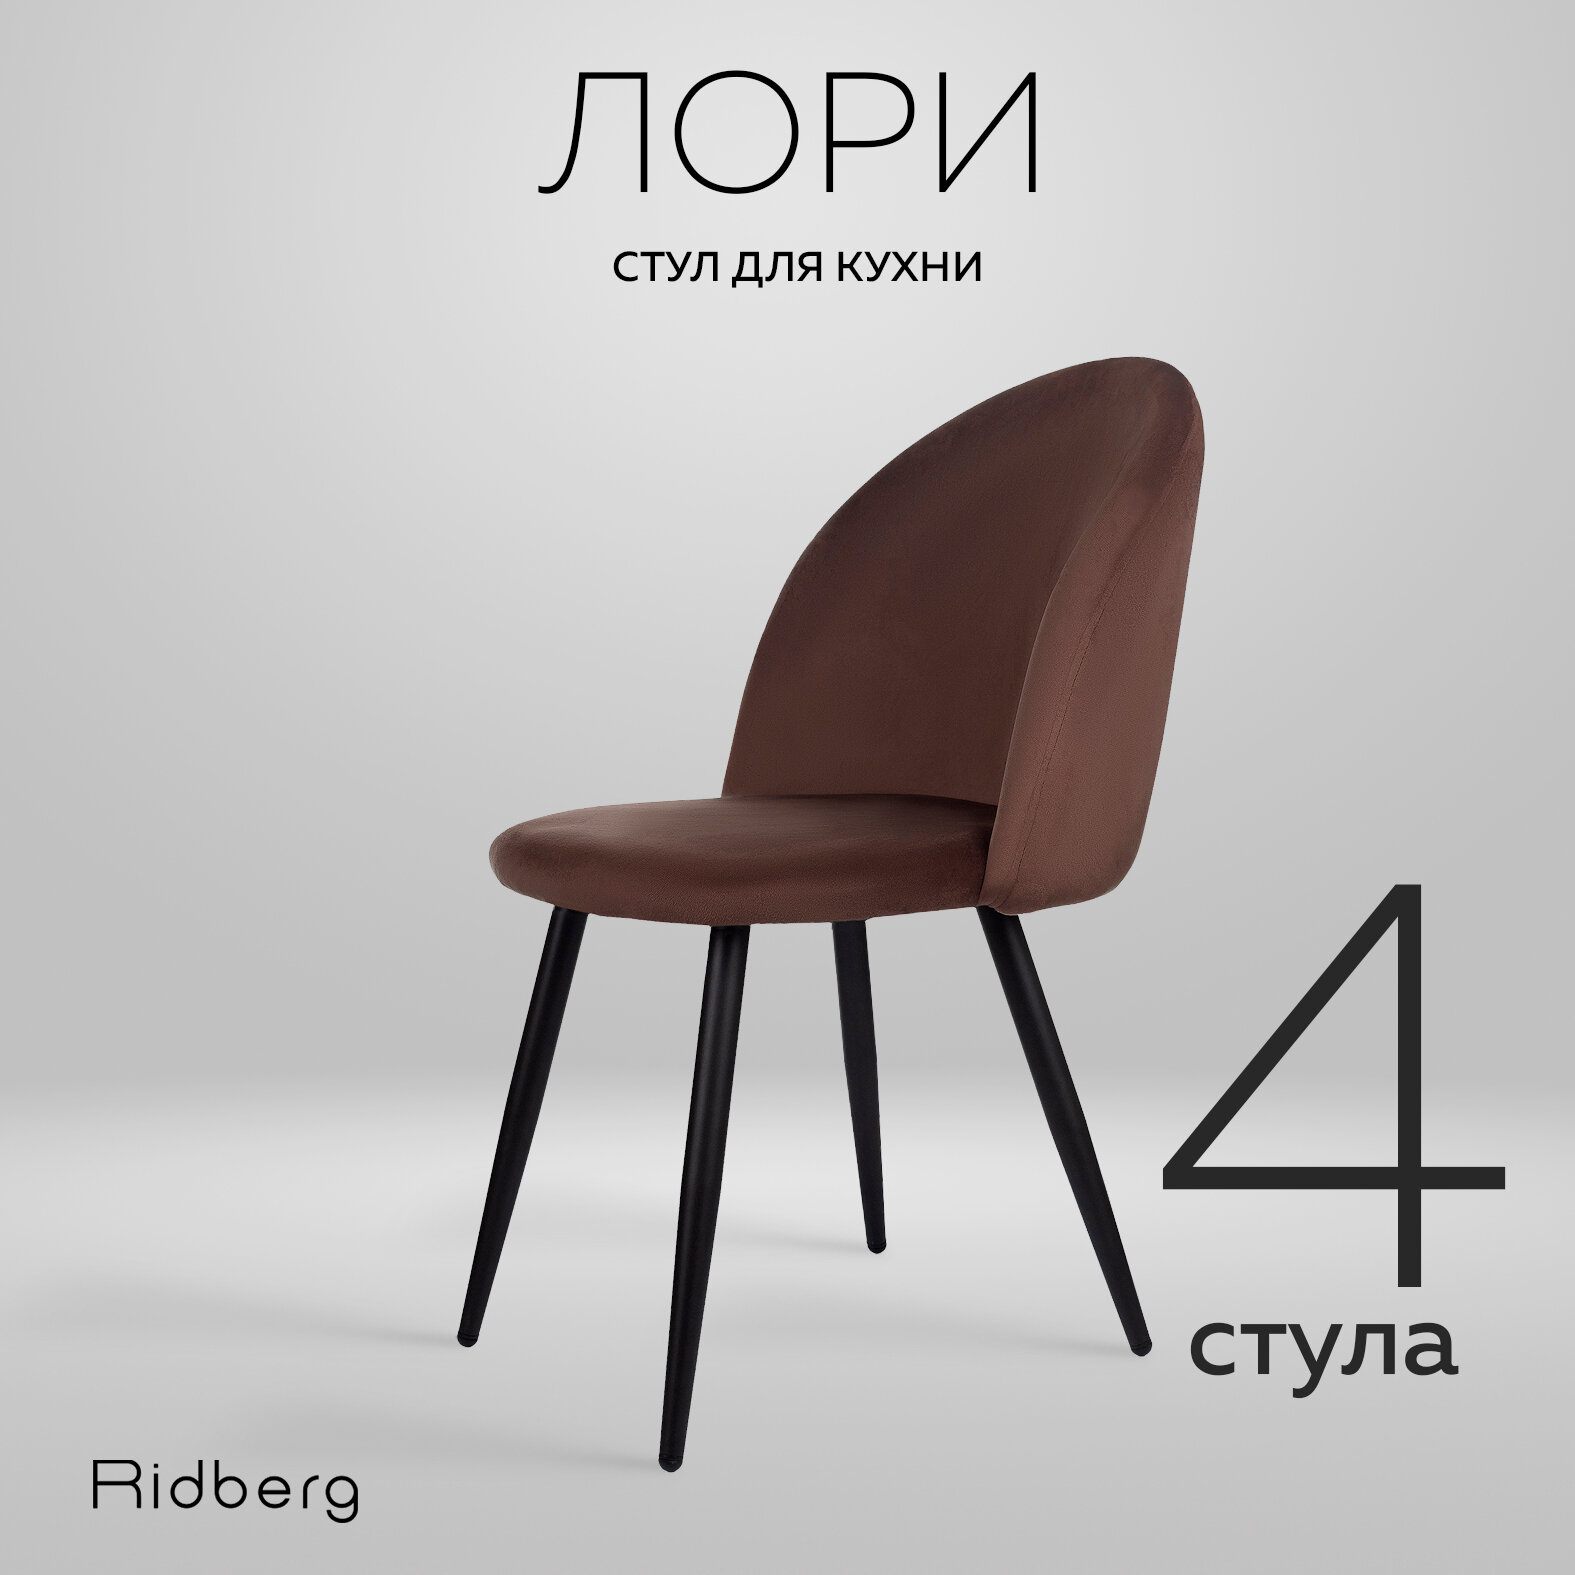 Комплект стульев Ridberg "Лори" для кухни и гостинной, 4 штуки, коричневый цвет